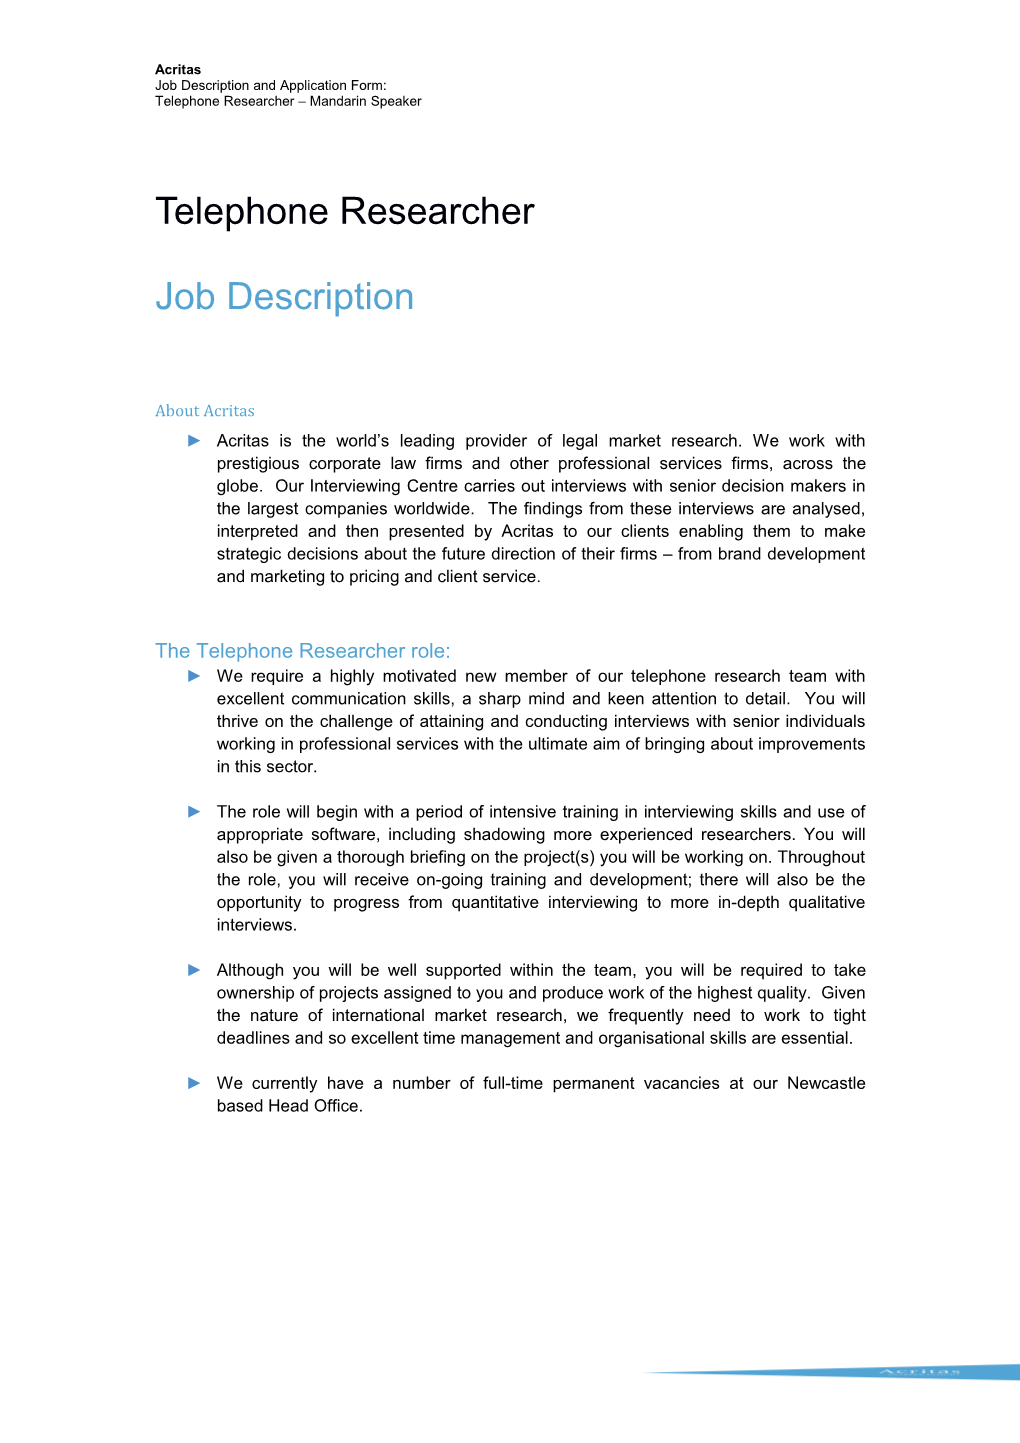 Job Description and Application Form